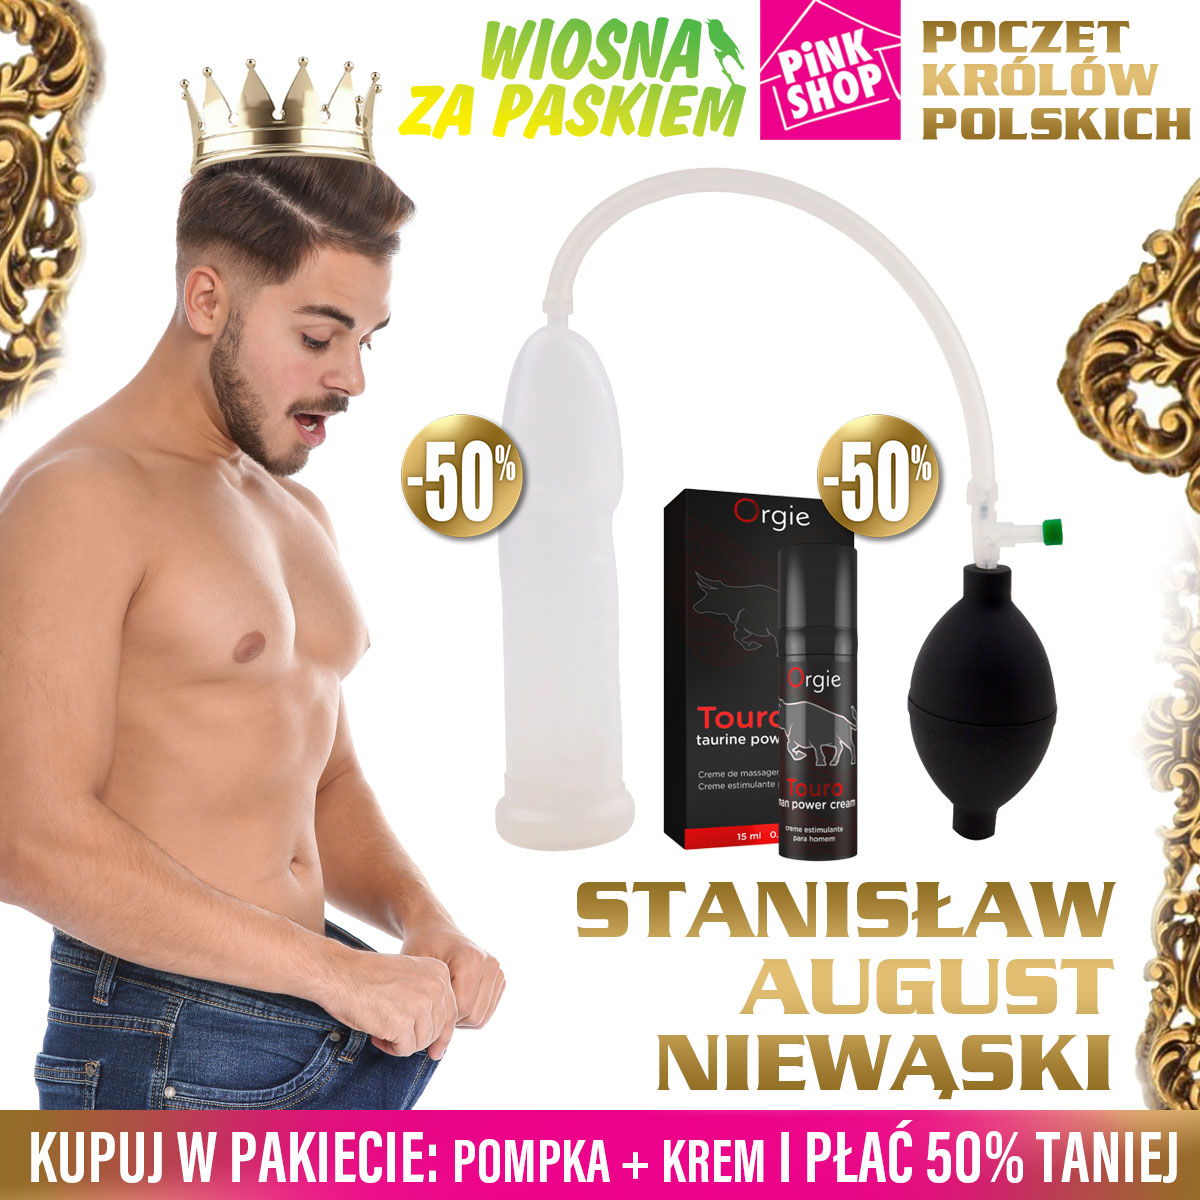 Poczet Królów Polskich - Stanisław August Niewąski odc. 5